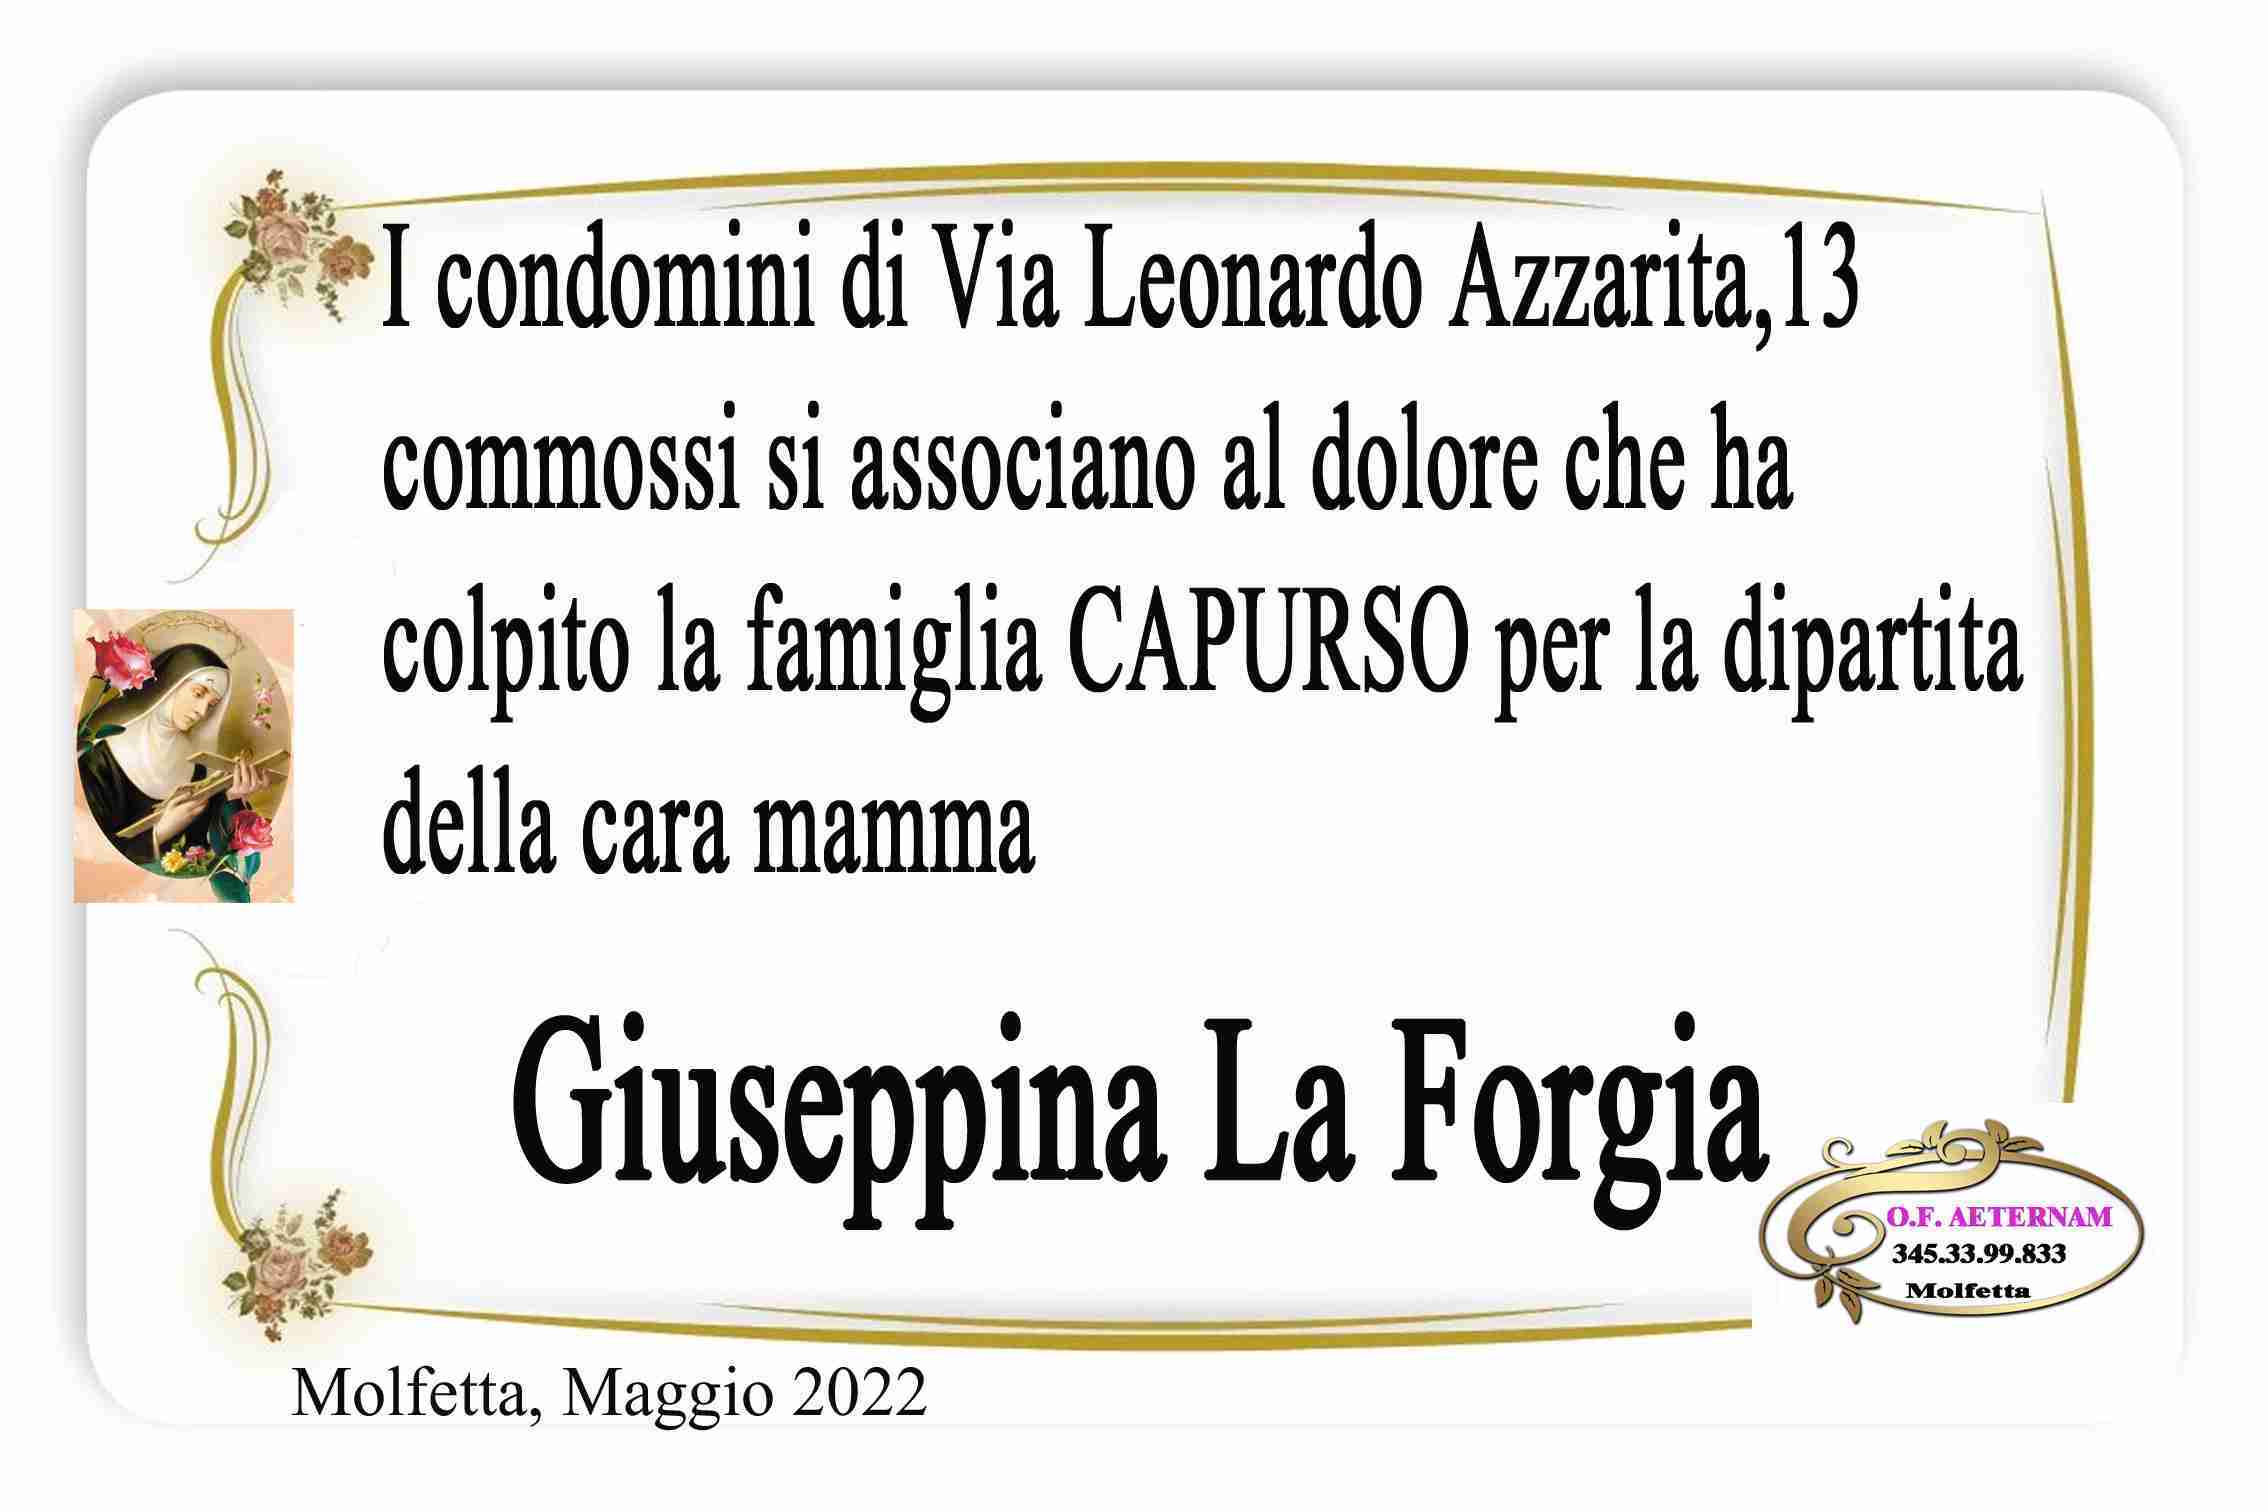 Giuseppina La Forgia